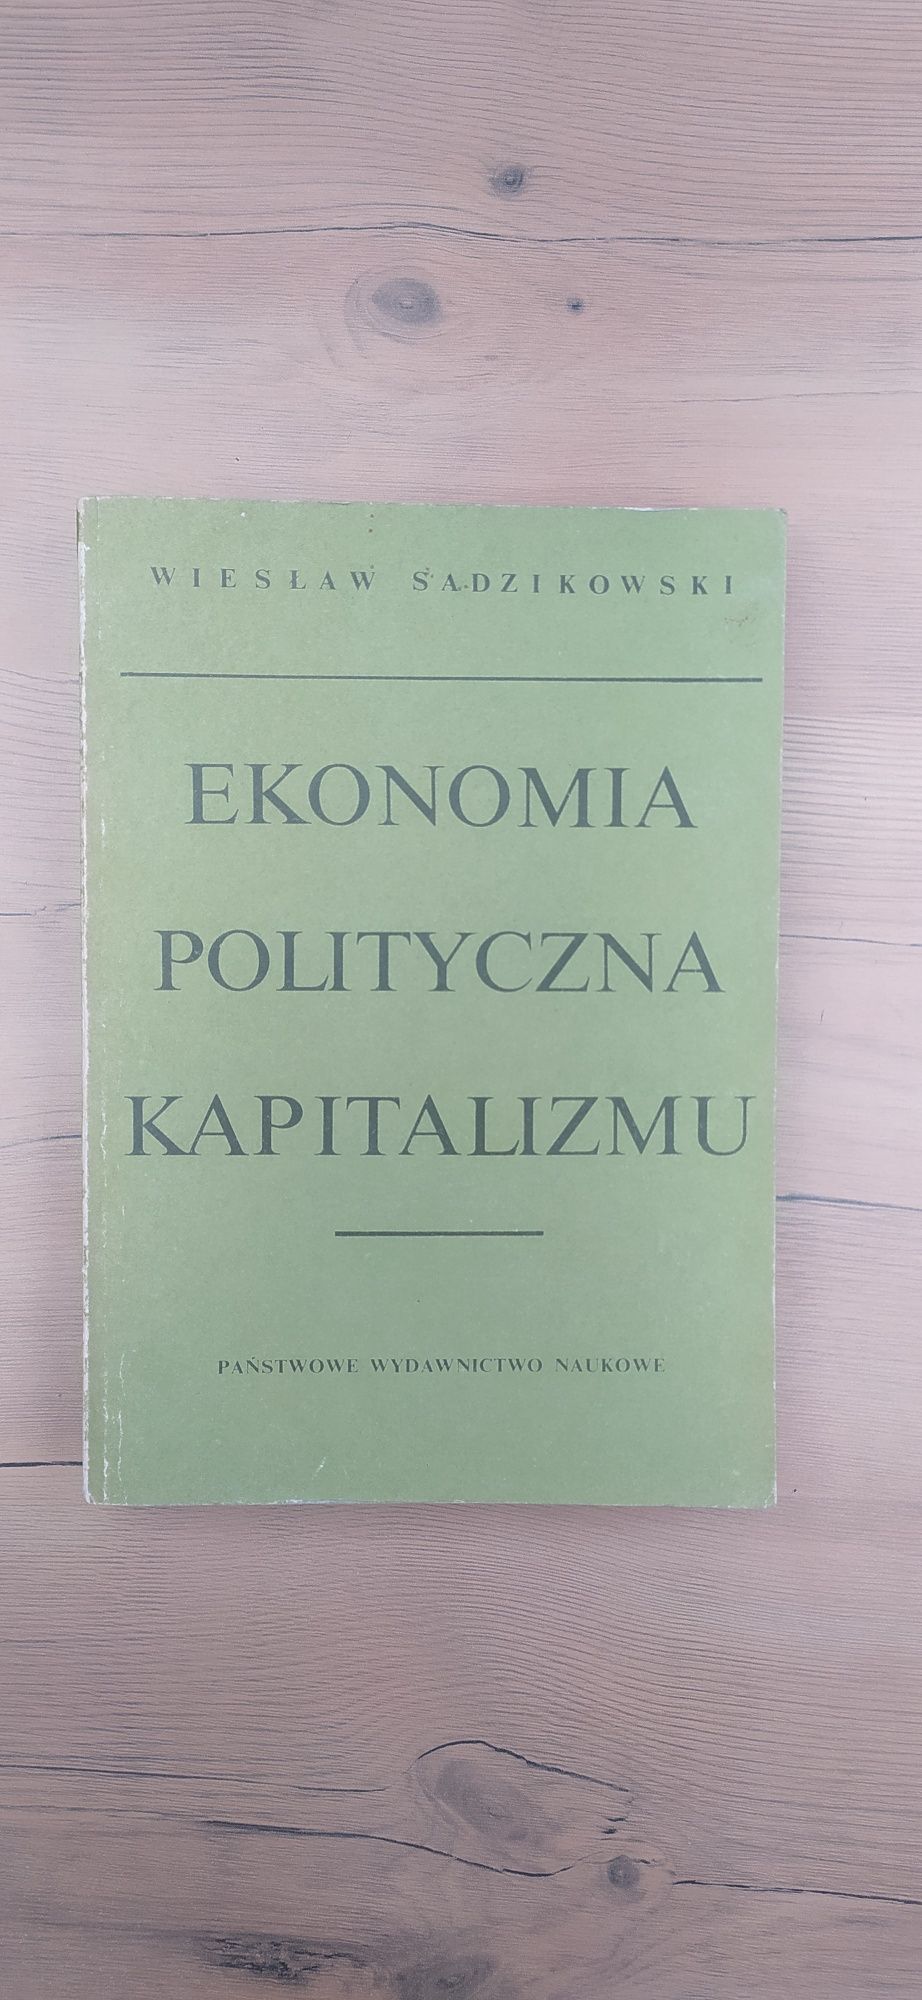 OKAZJA Książka " Ekonomia polityczna kapitalizmu " Wiesław Sadzikowski